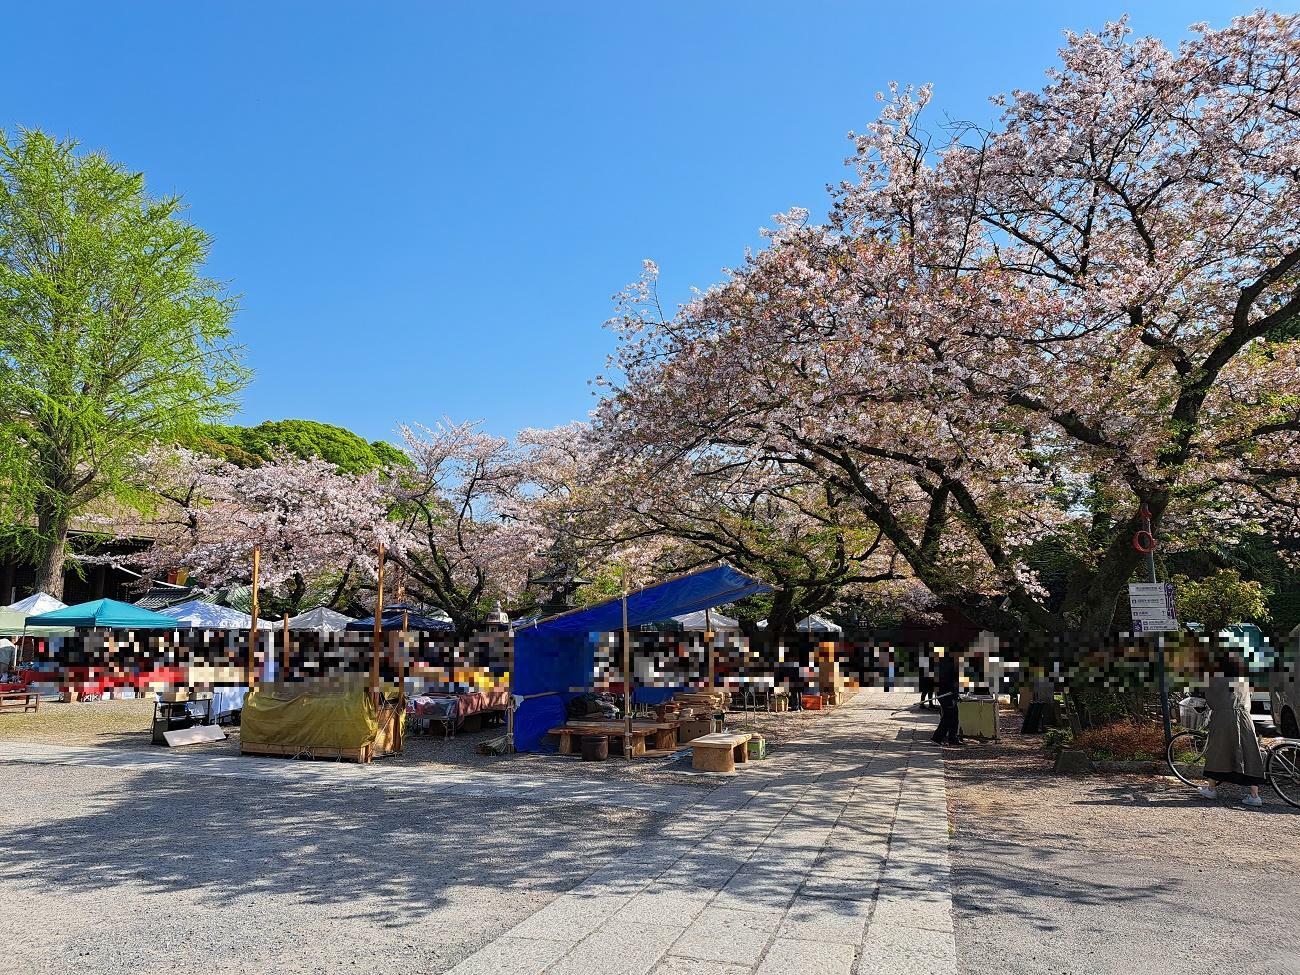 法華経寺の境内ではまだ桜を楽しむことが出来ます。